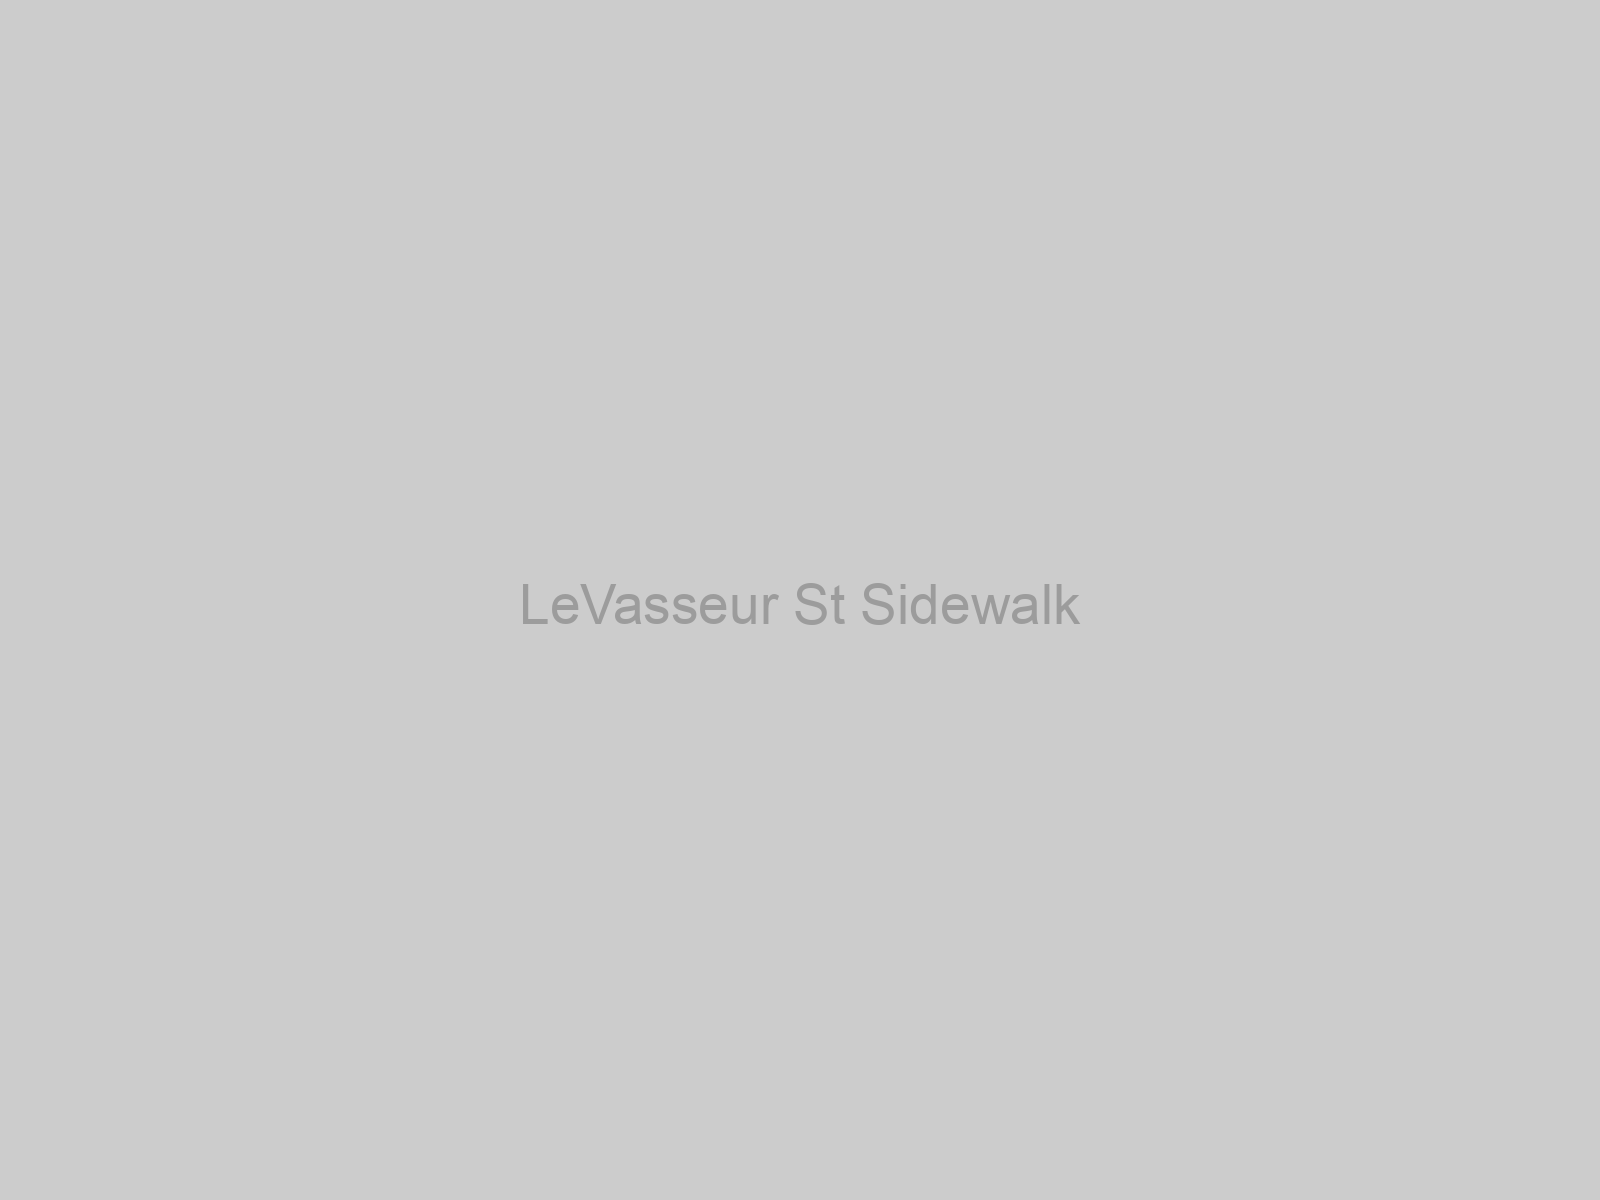 LeVasseur St Sidewalk